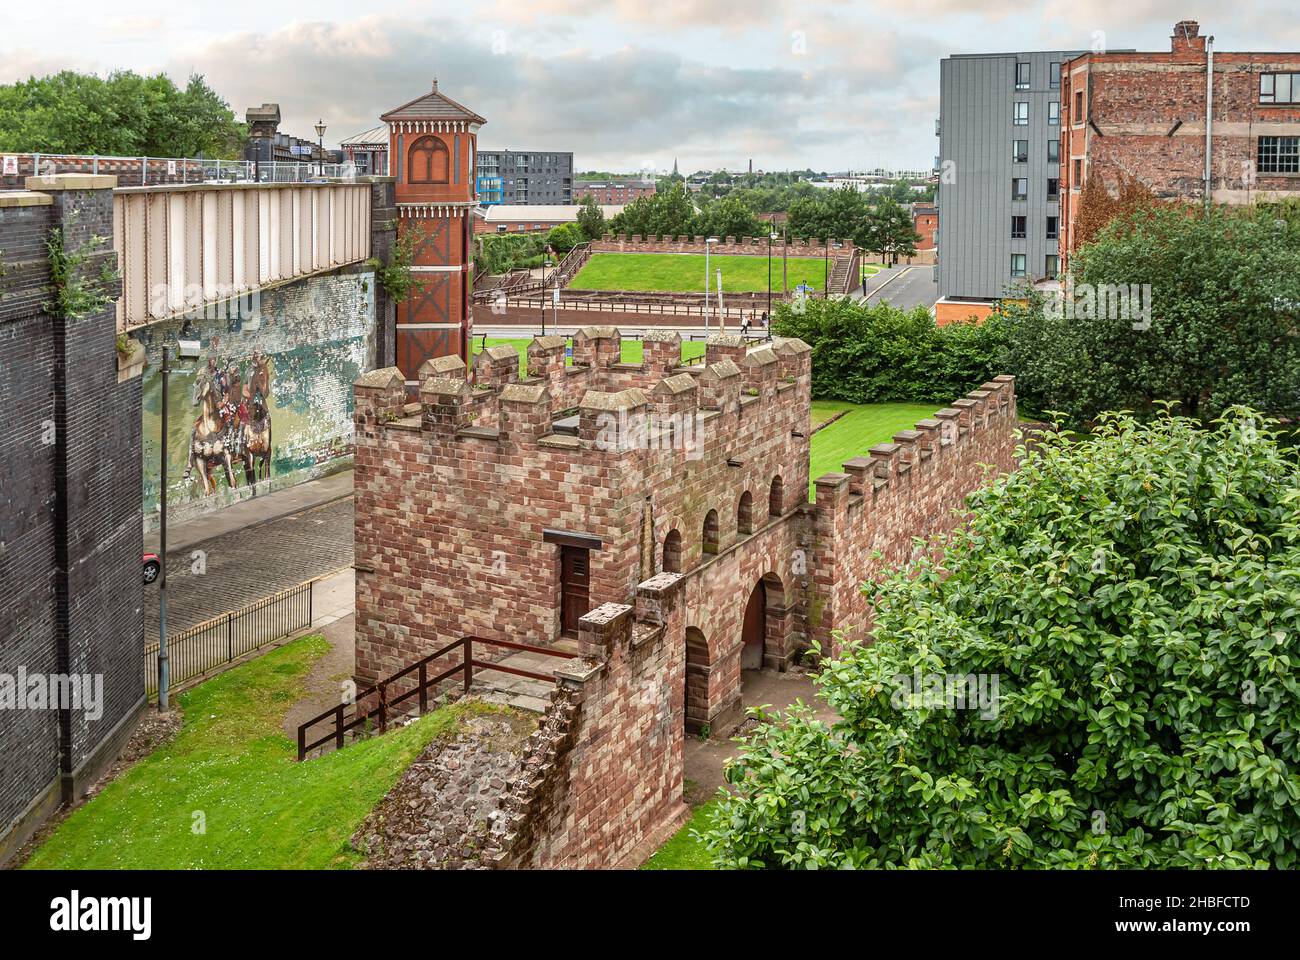 Los restos del fuerte romano (Mamucium), protegido como monumento antiguo programado en el área de Castlefield de Manchester, Inglaterra Foto de stock